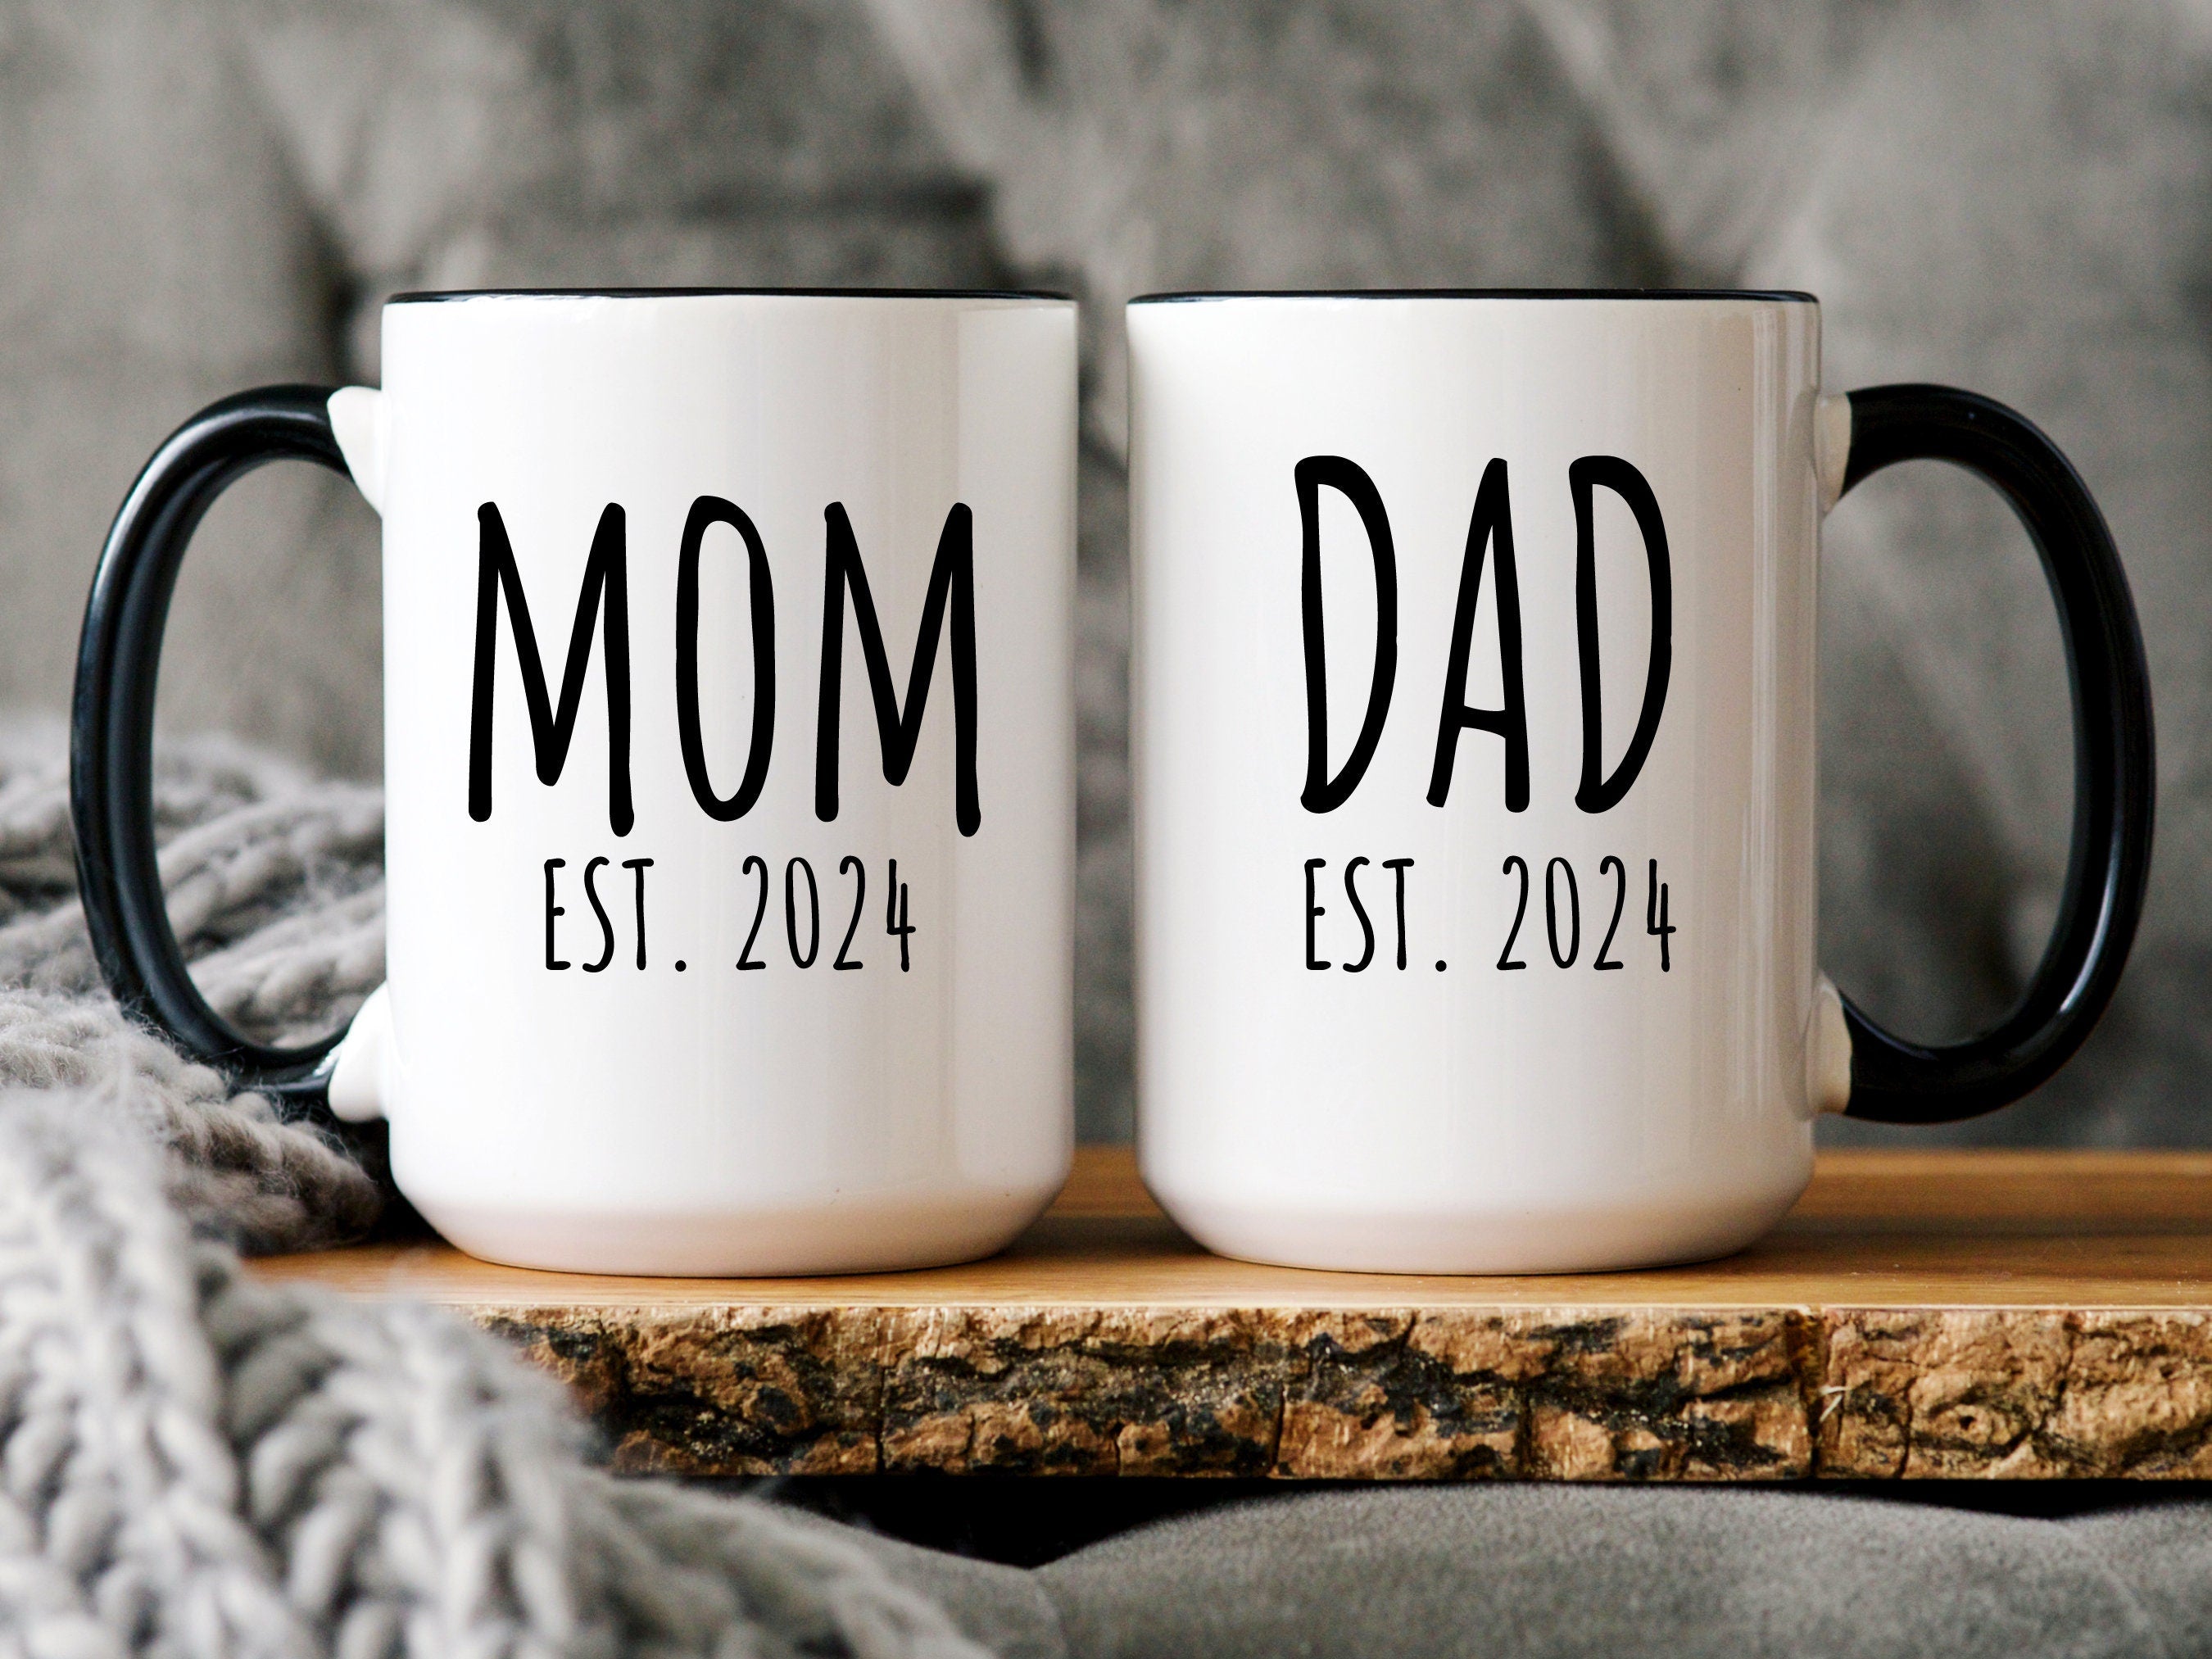 Mom and Dad Mug Set